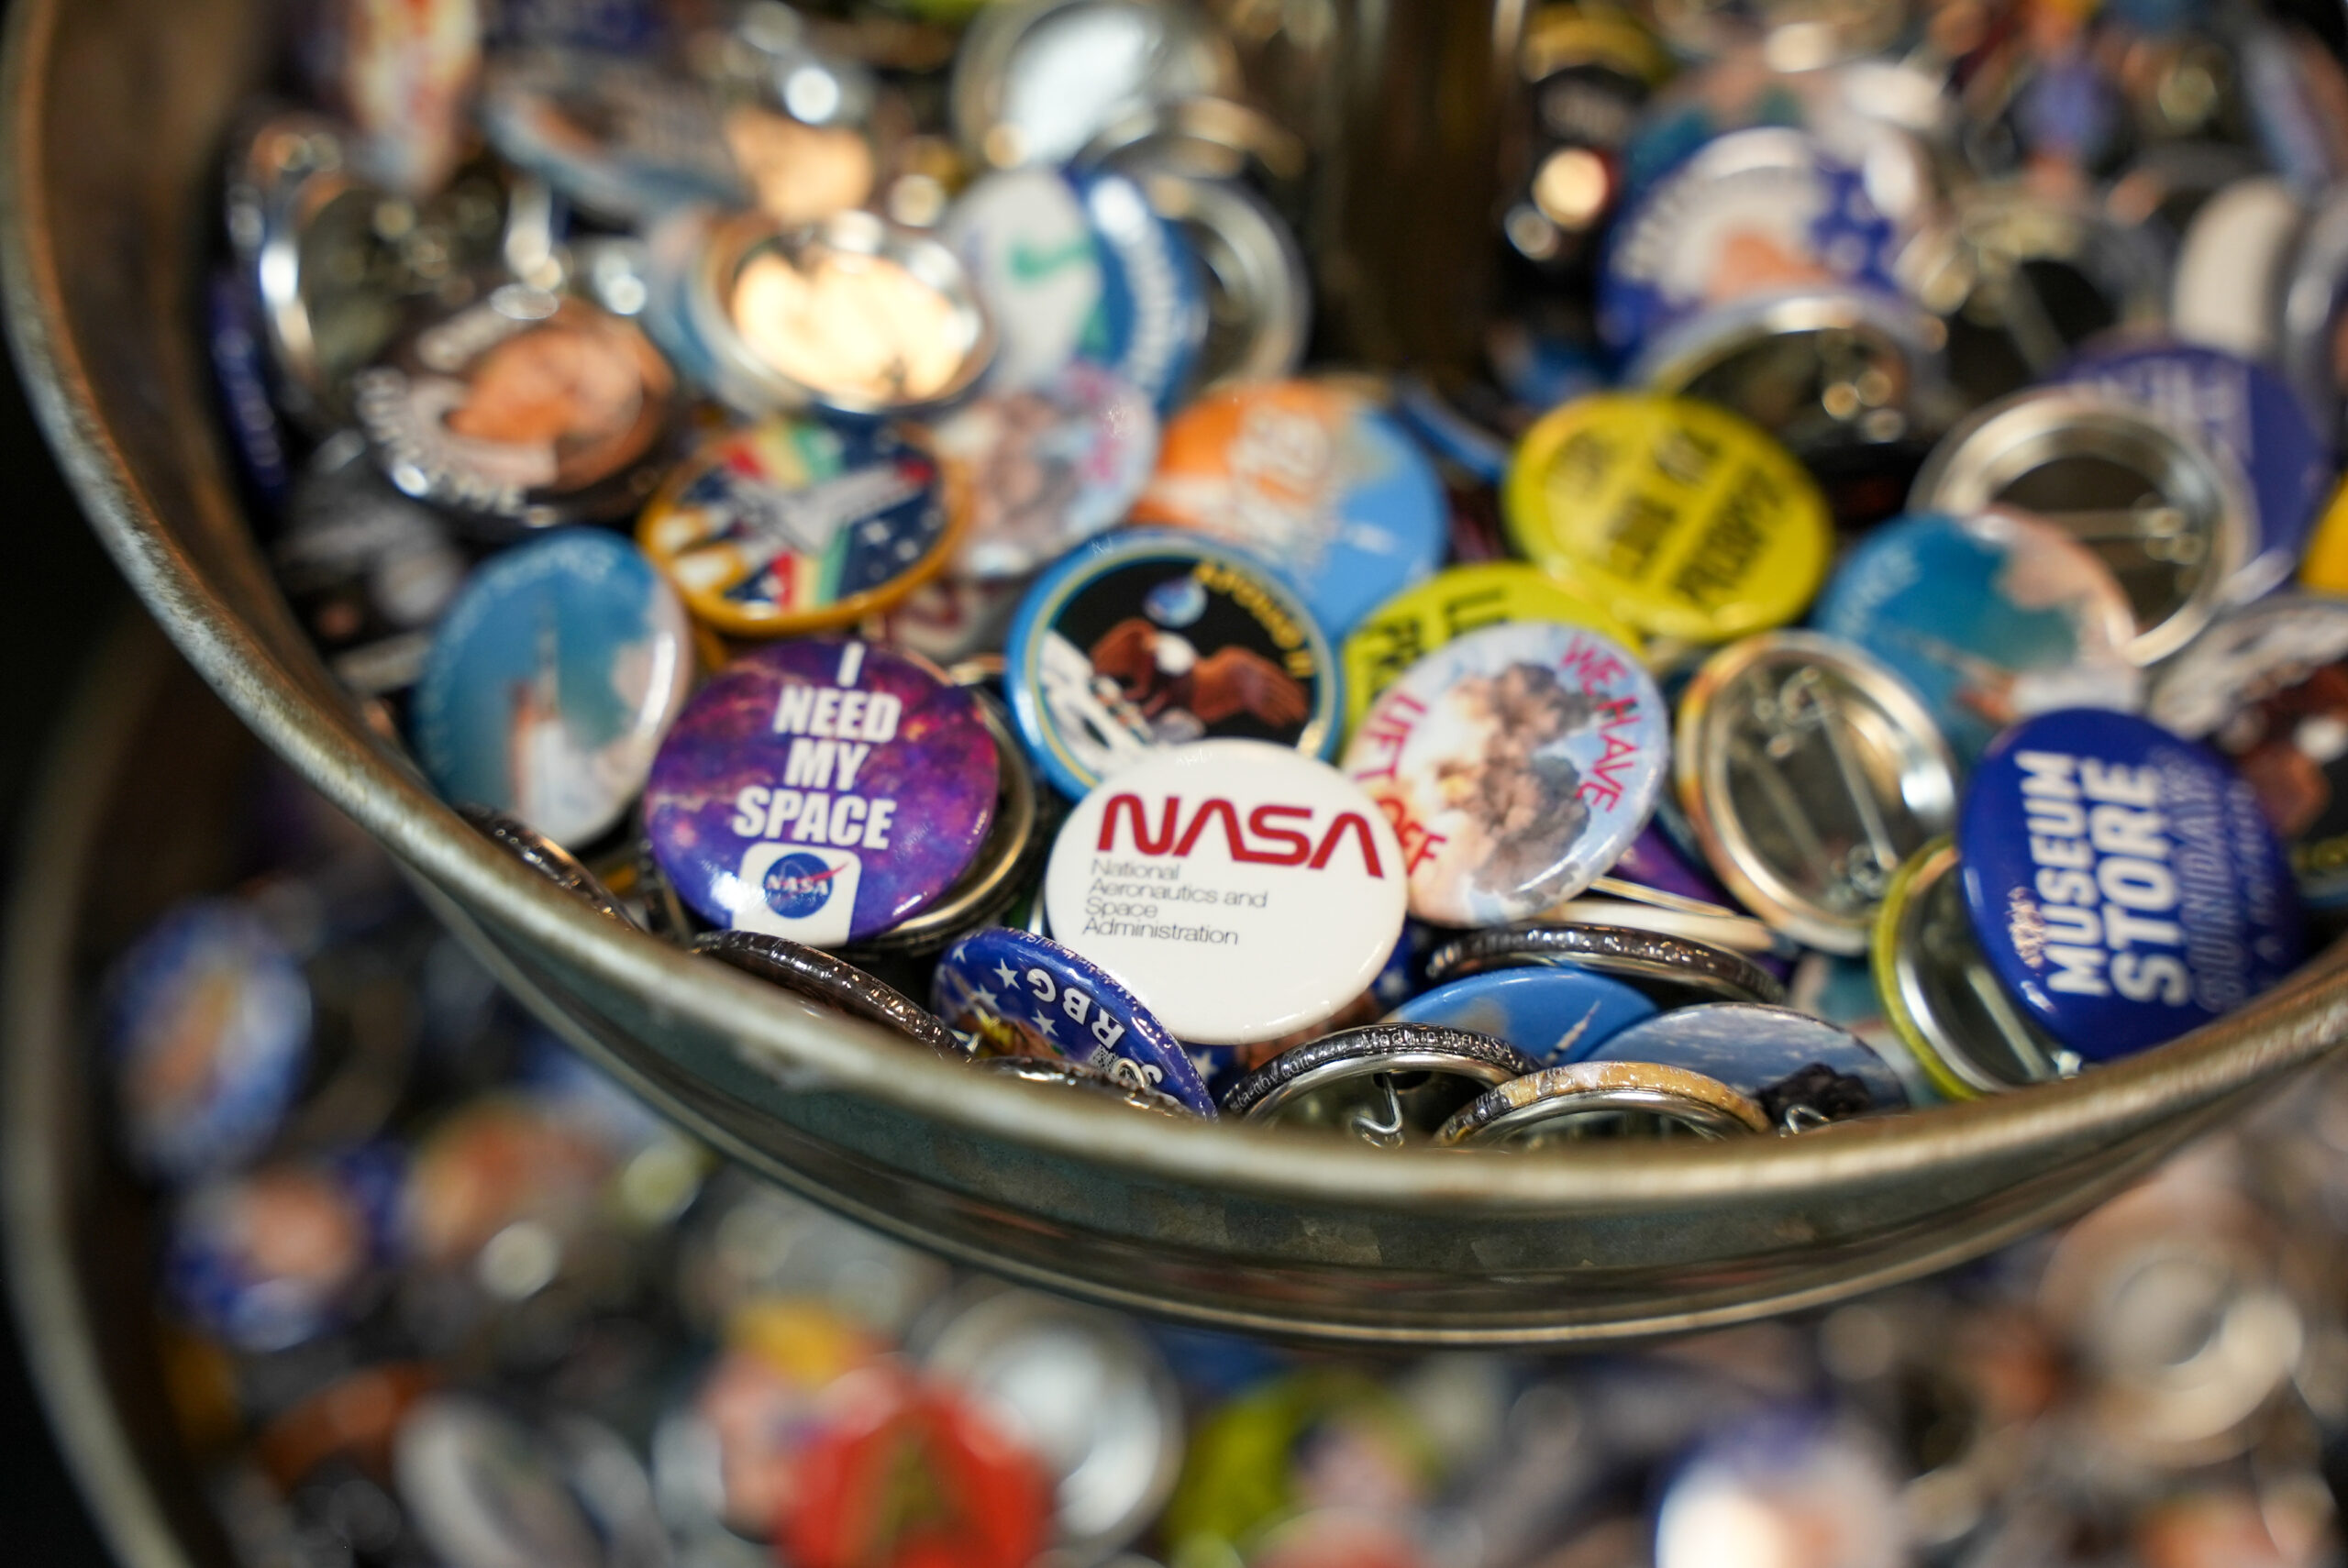 A bowl full of various circular pins.